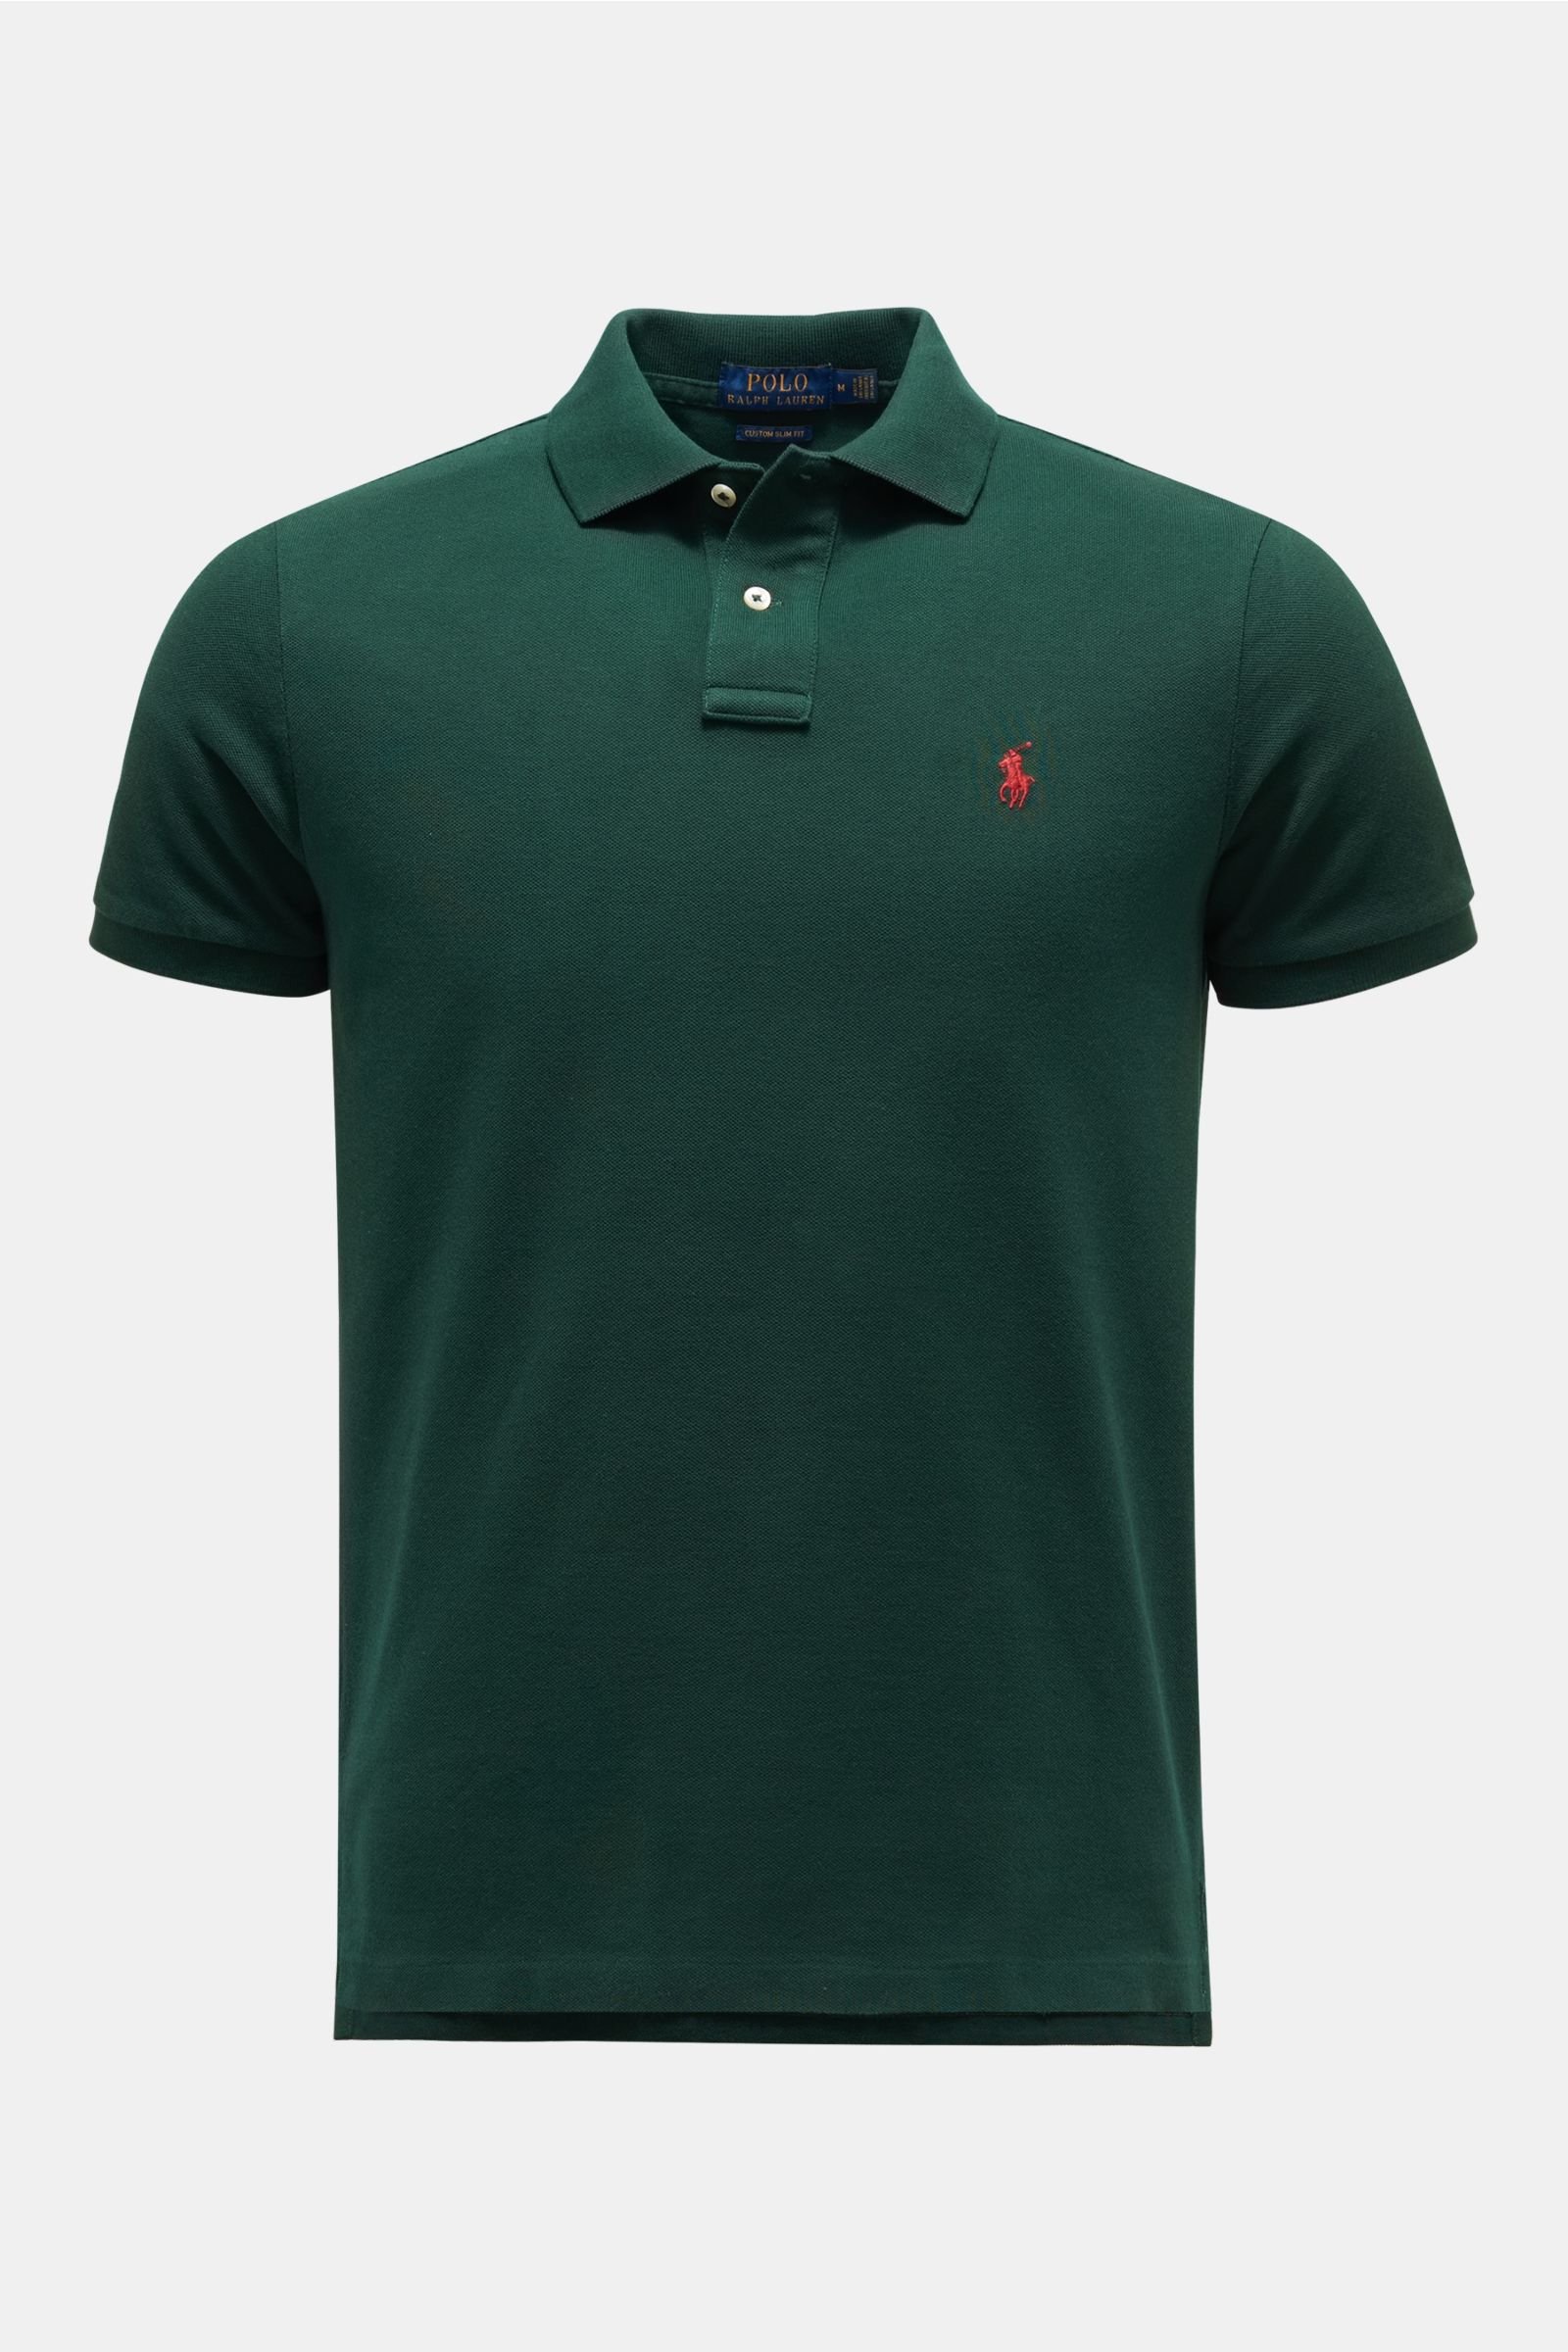 dark green ralph lauren polo shirt